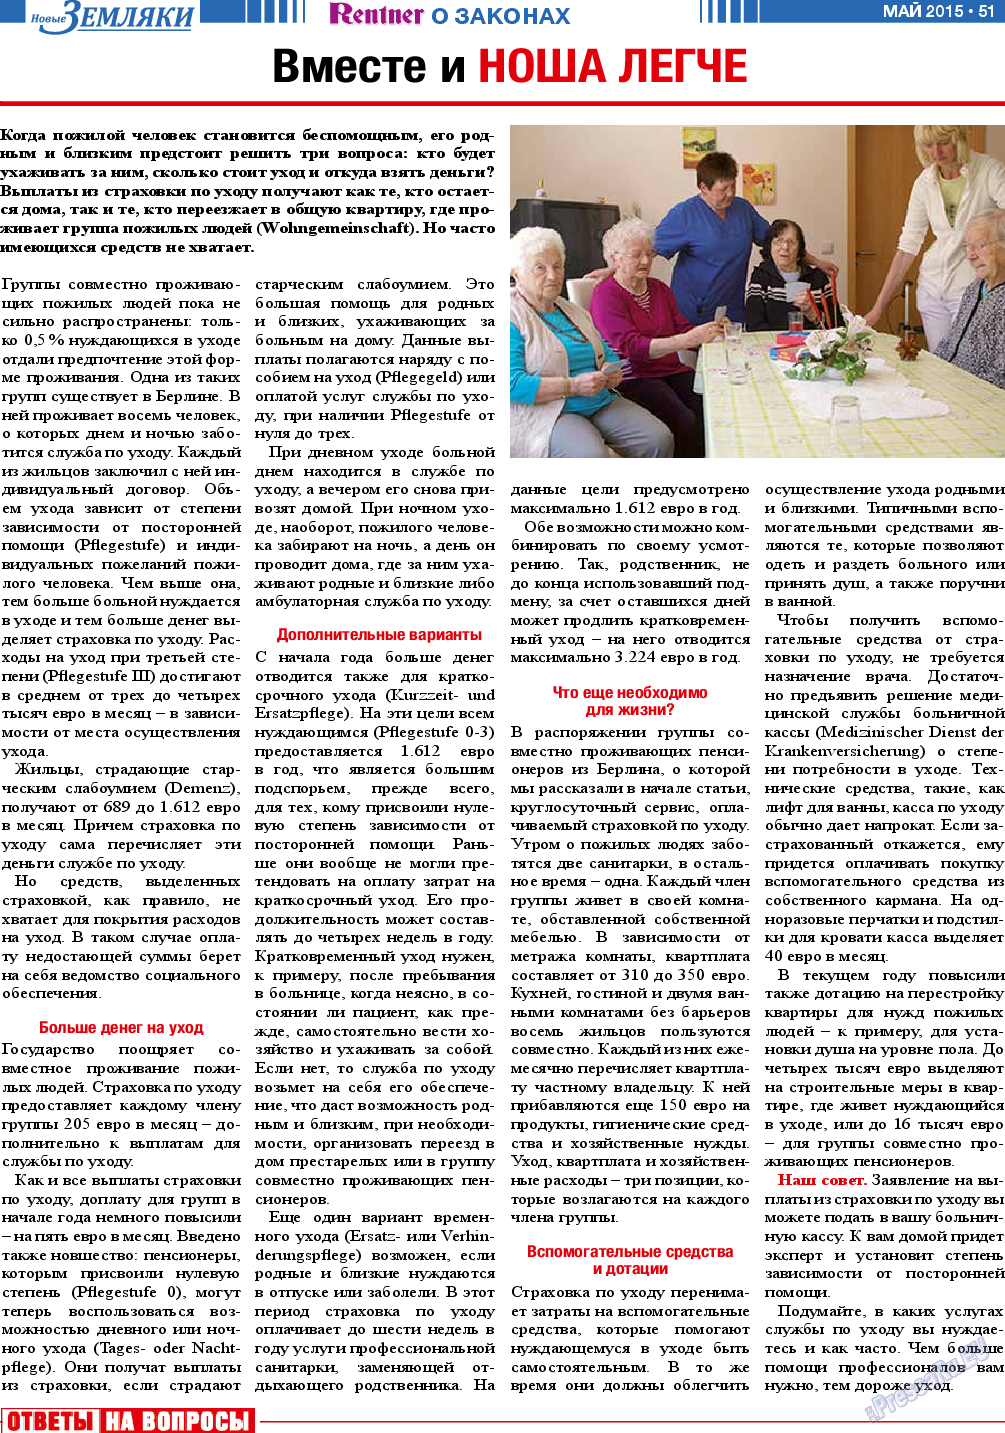 Новые Земляки, газета. 2015 №5 стр.51